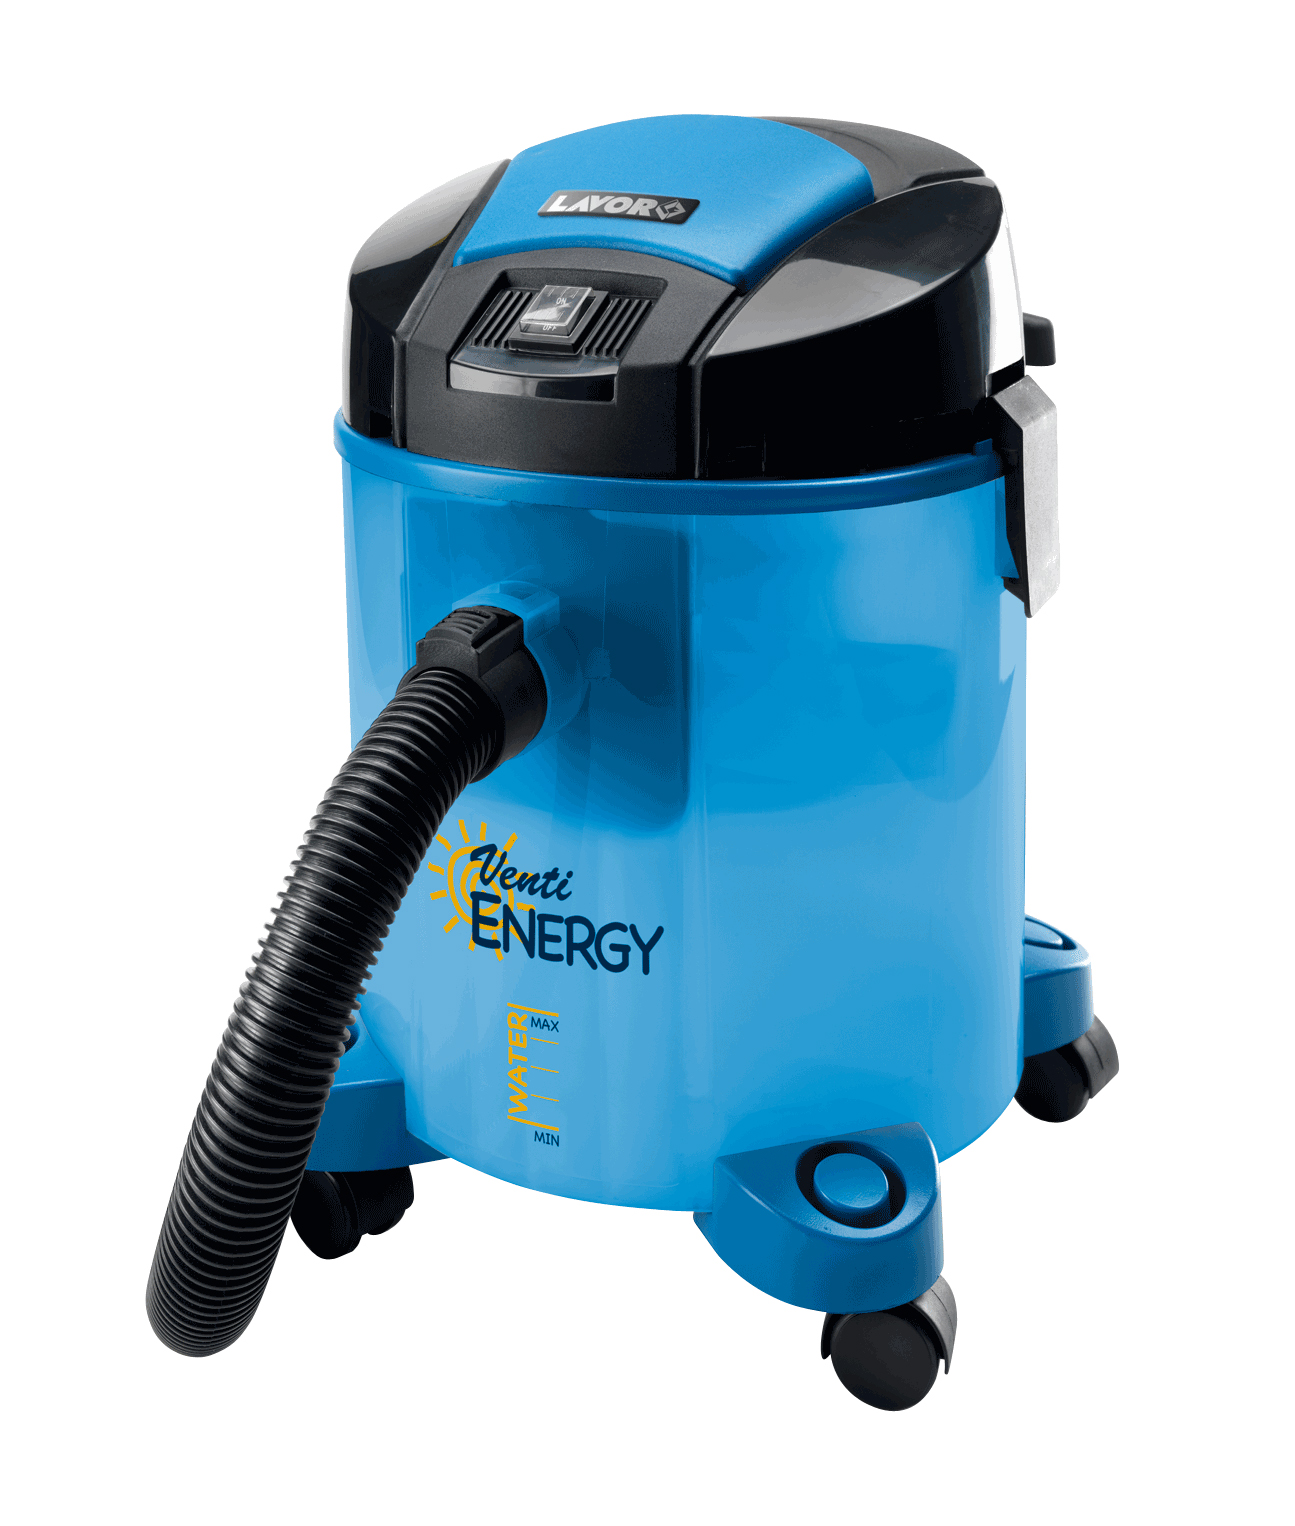 Aspiratore venti energy wet&dry220-240/50-60 lws